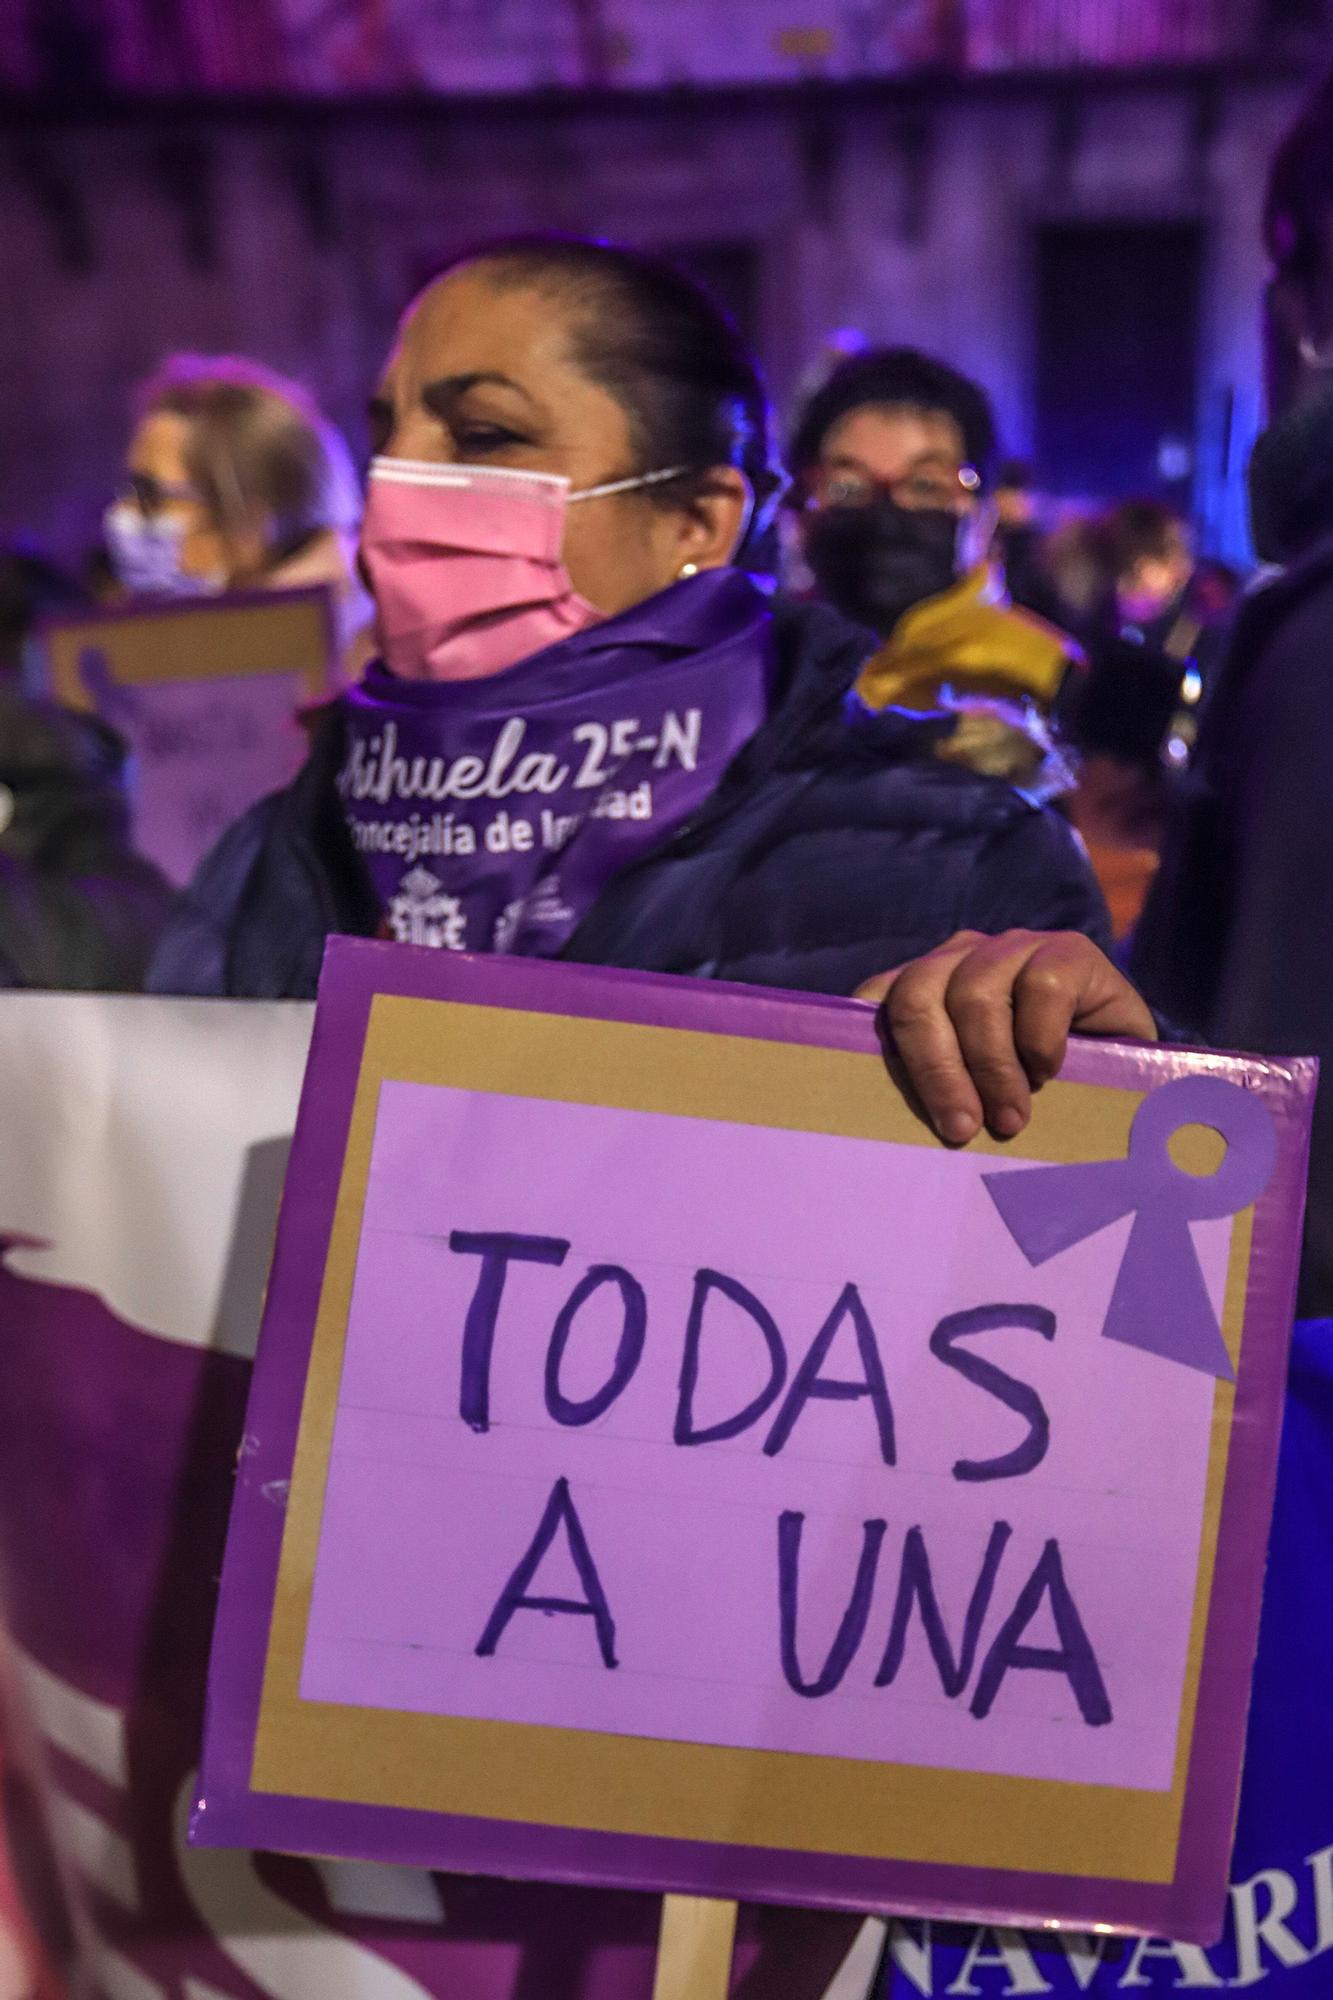 Protesta anoche en Orihuela en la marcha del 25N convocada por la Mesa de Igualdad del municipio y la concejalía